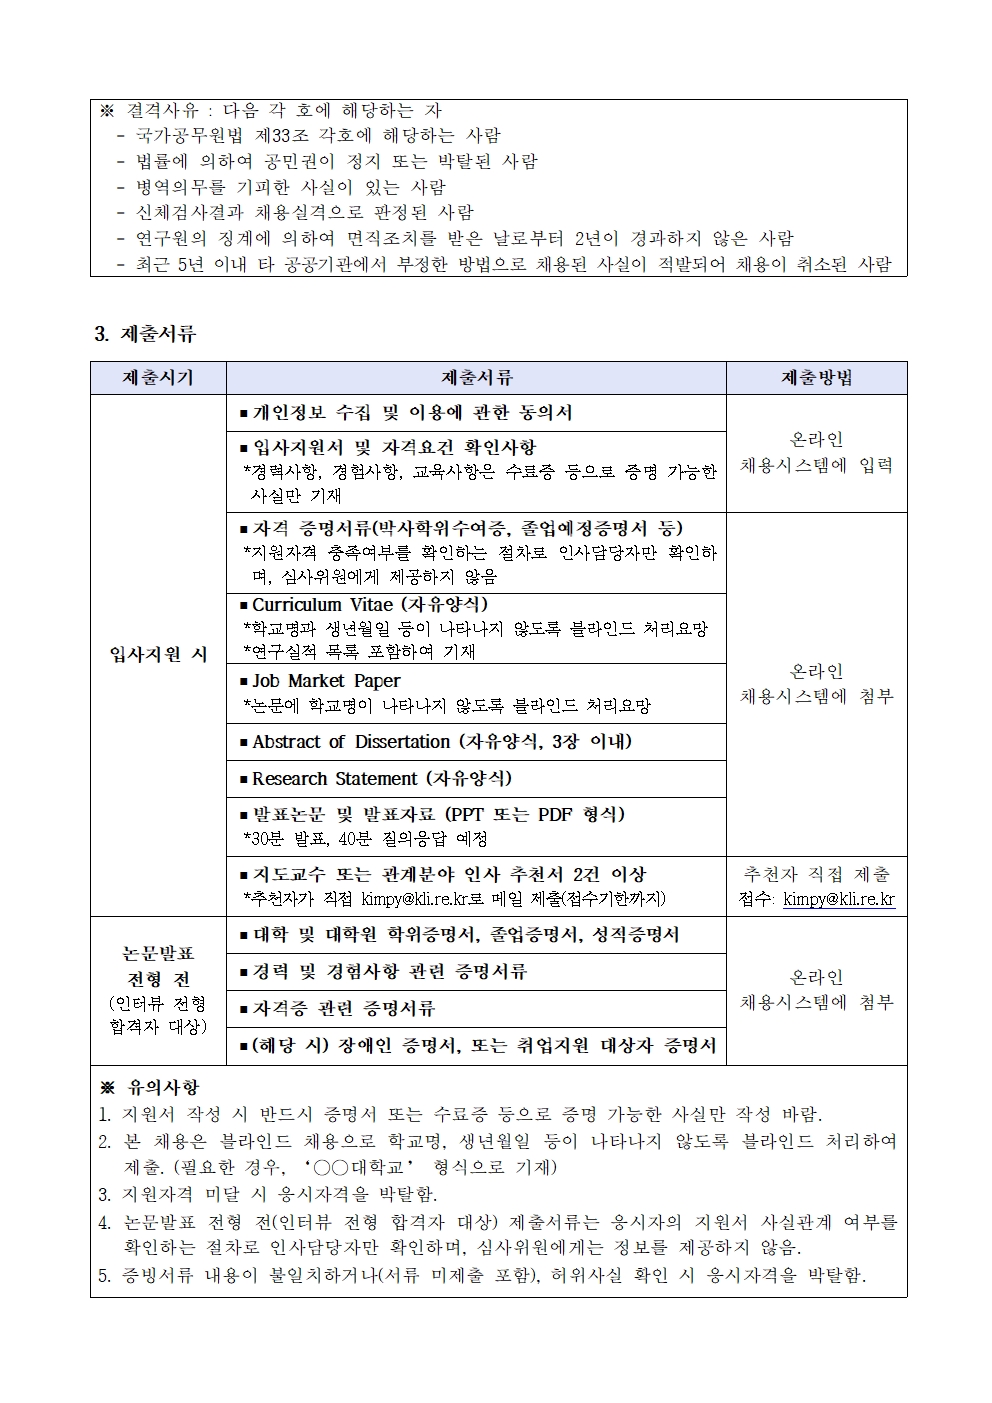 한국노동연구원 연구위원 채용공고 2 | 자세한 내용은 하단의 첨부파일을 참조하세요 : 2021-05호 연구위원 채용 공고문.pdf